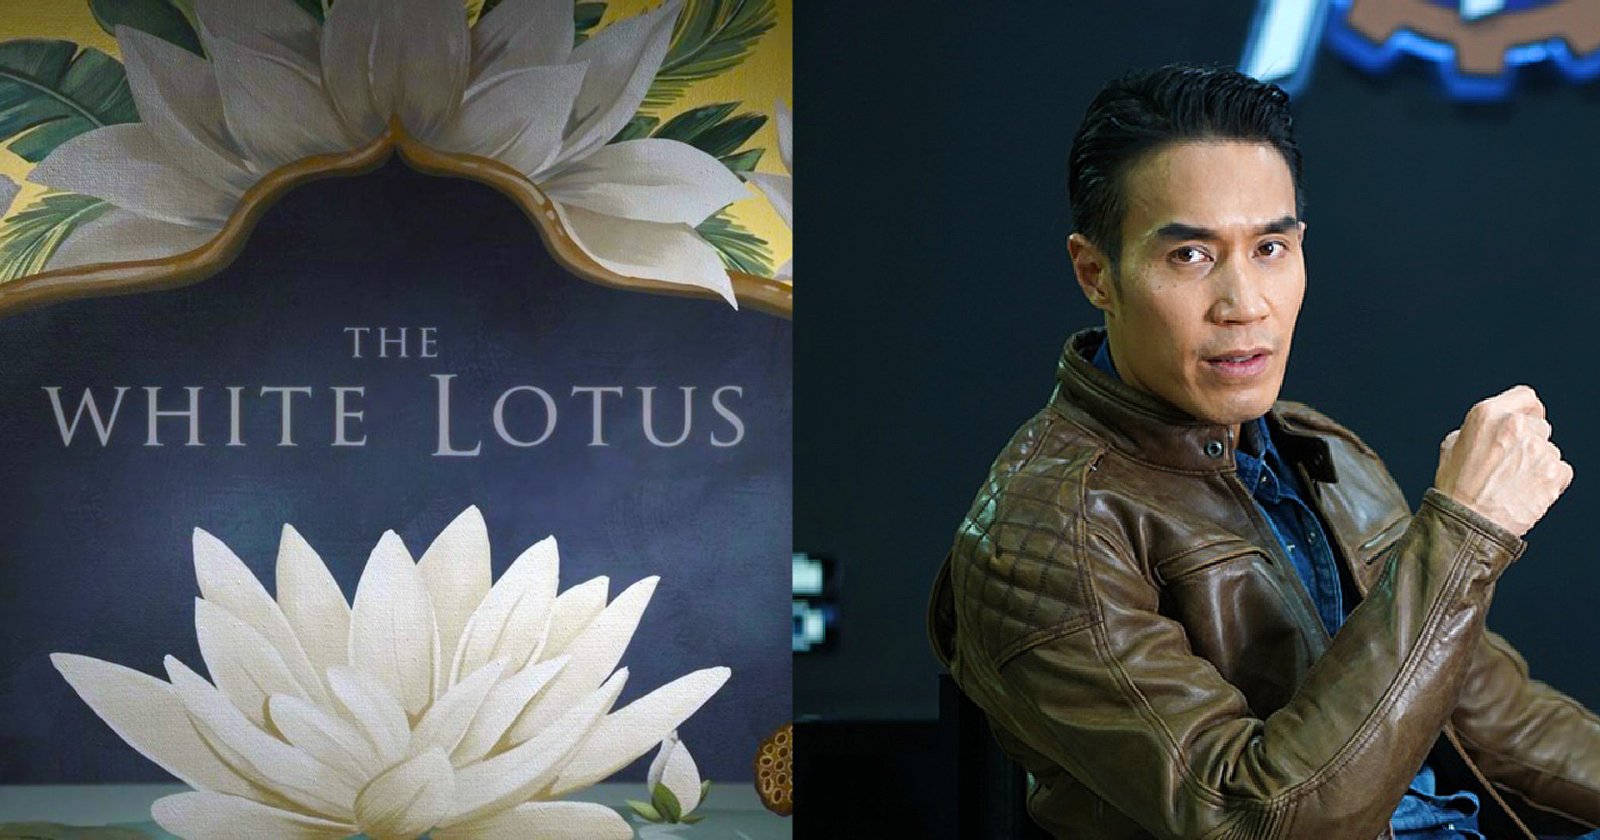 ‘The White Lotus’ เปิดรับแขกอีกครั้งในซีซัน 3: ถ่ายทำในประเทศไทย และ ดอม เหตระกูล ได้ร่วมงานด้วย